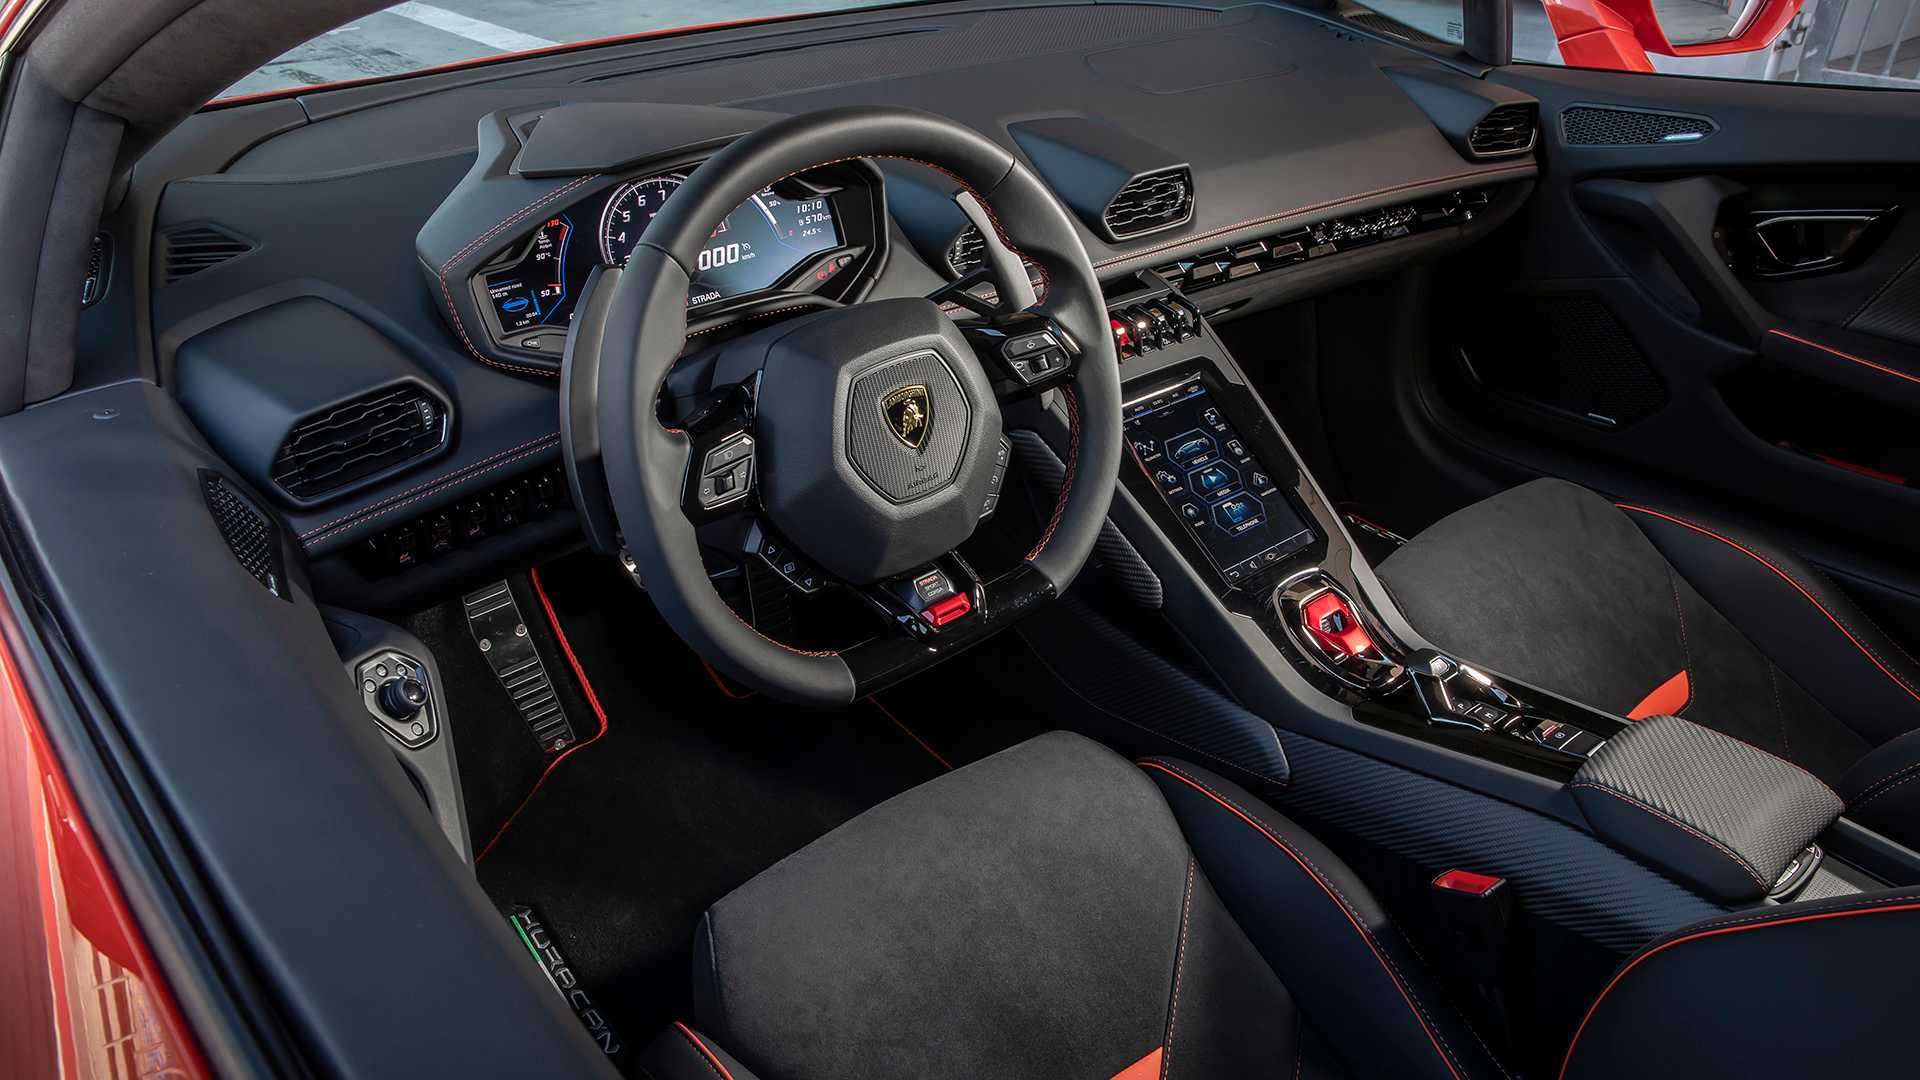 Lamborghini Huracan interior - Cockpit